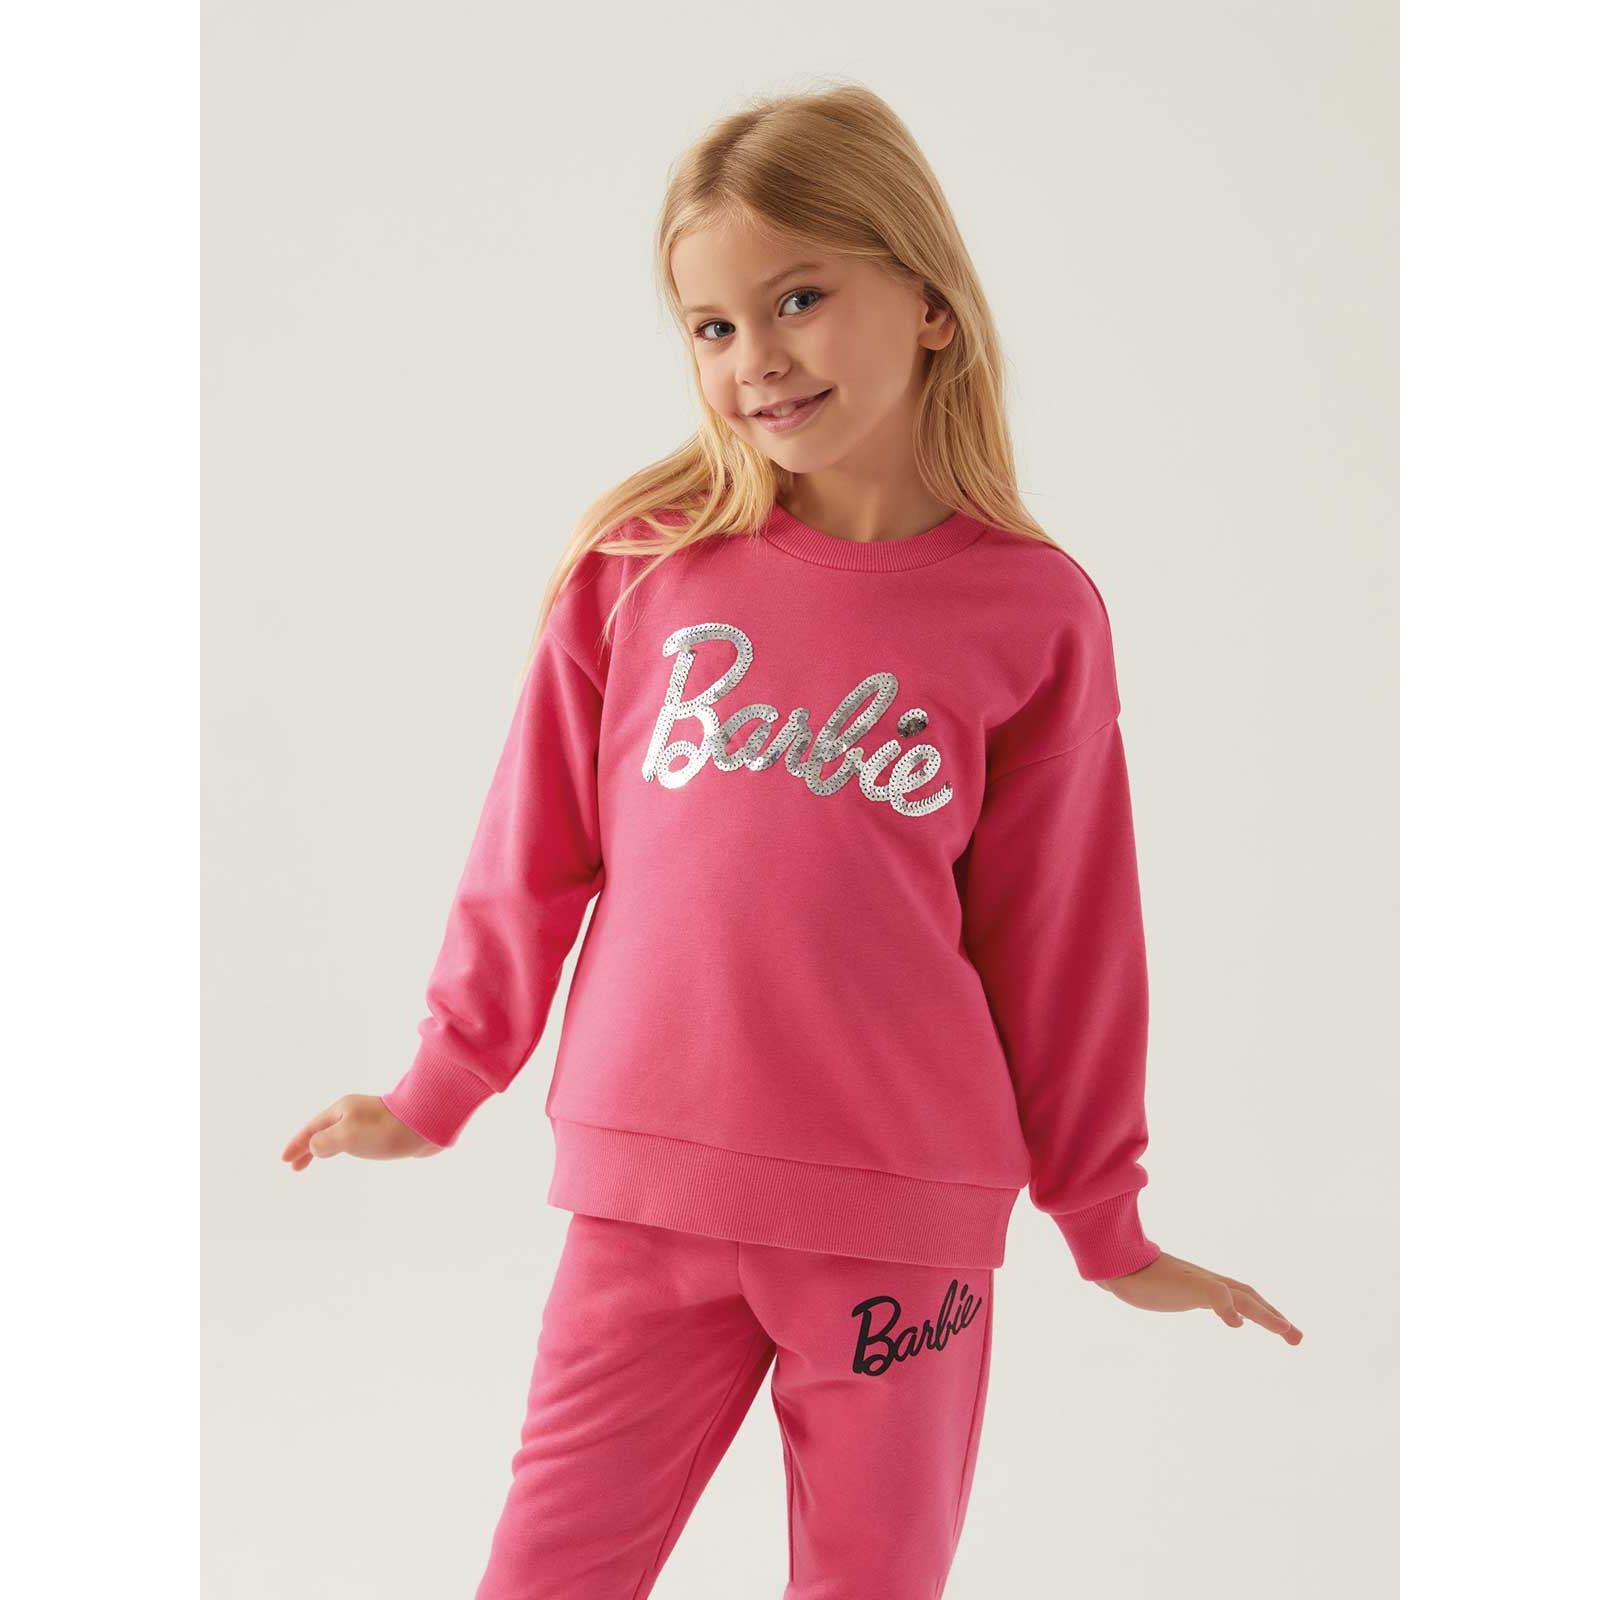 Barbie Kız Çocuk Sweatshirt 9-14 Yaş Açık Fuşya